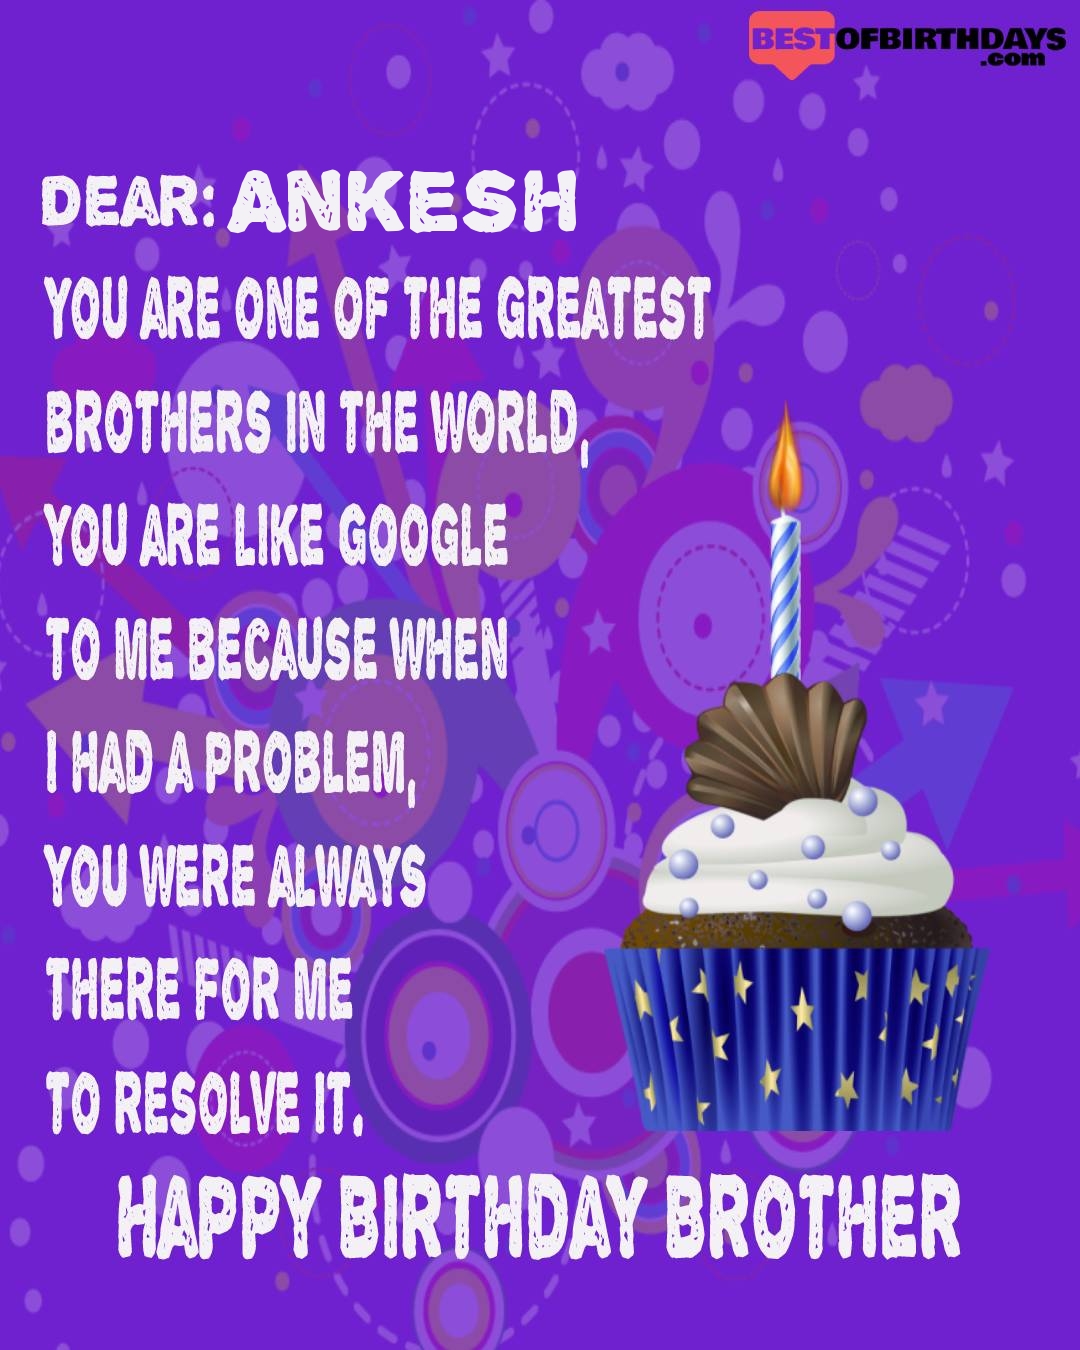 Happy birthday ankesh bhai brother bro